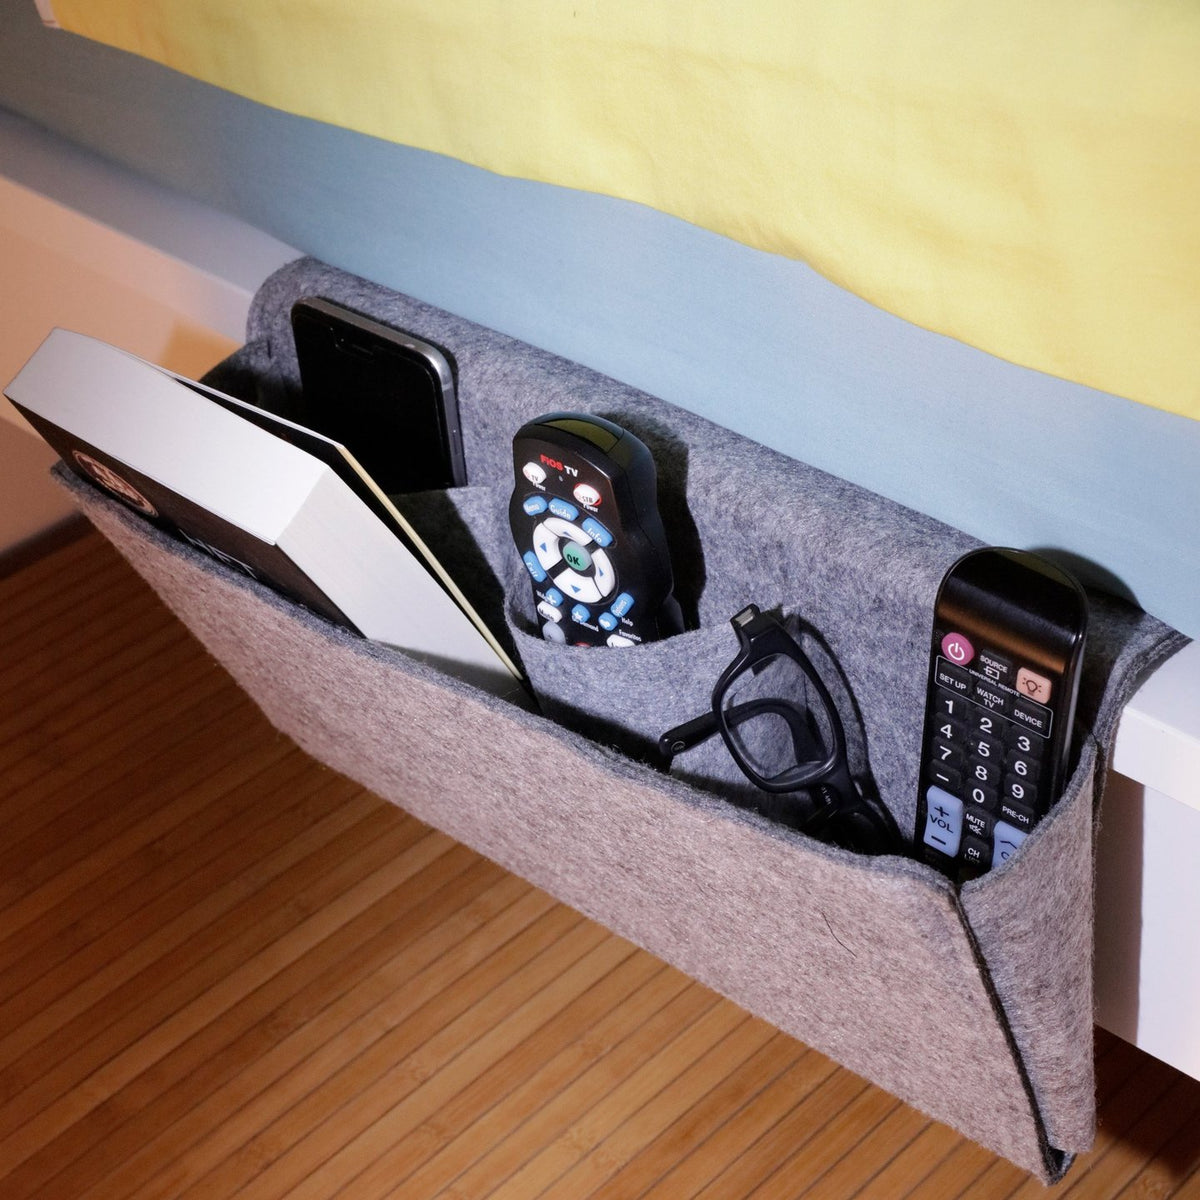 KIKKERLAND Felt Bedside Caddy - Bedside Storage Pocket and Holder for Book and more - Large - Gray